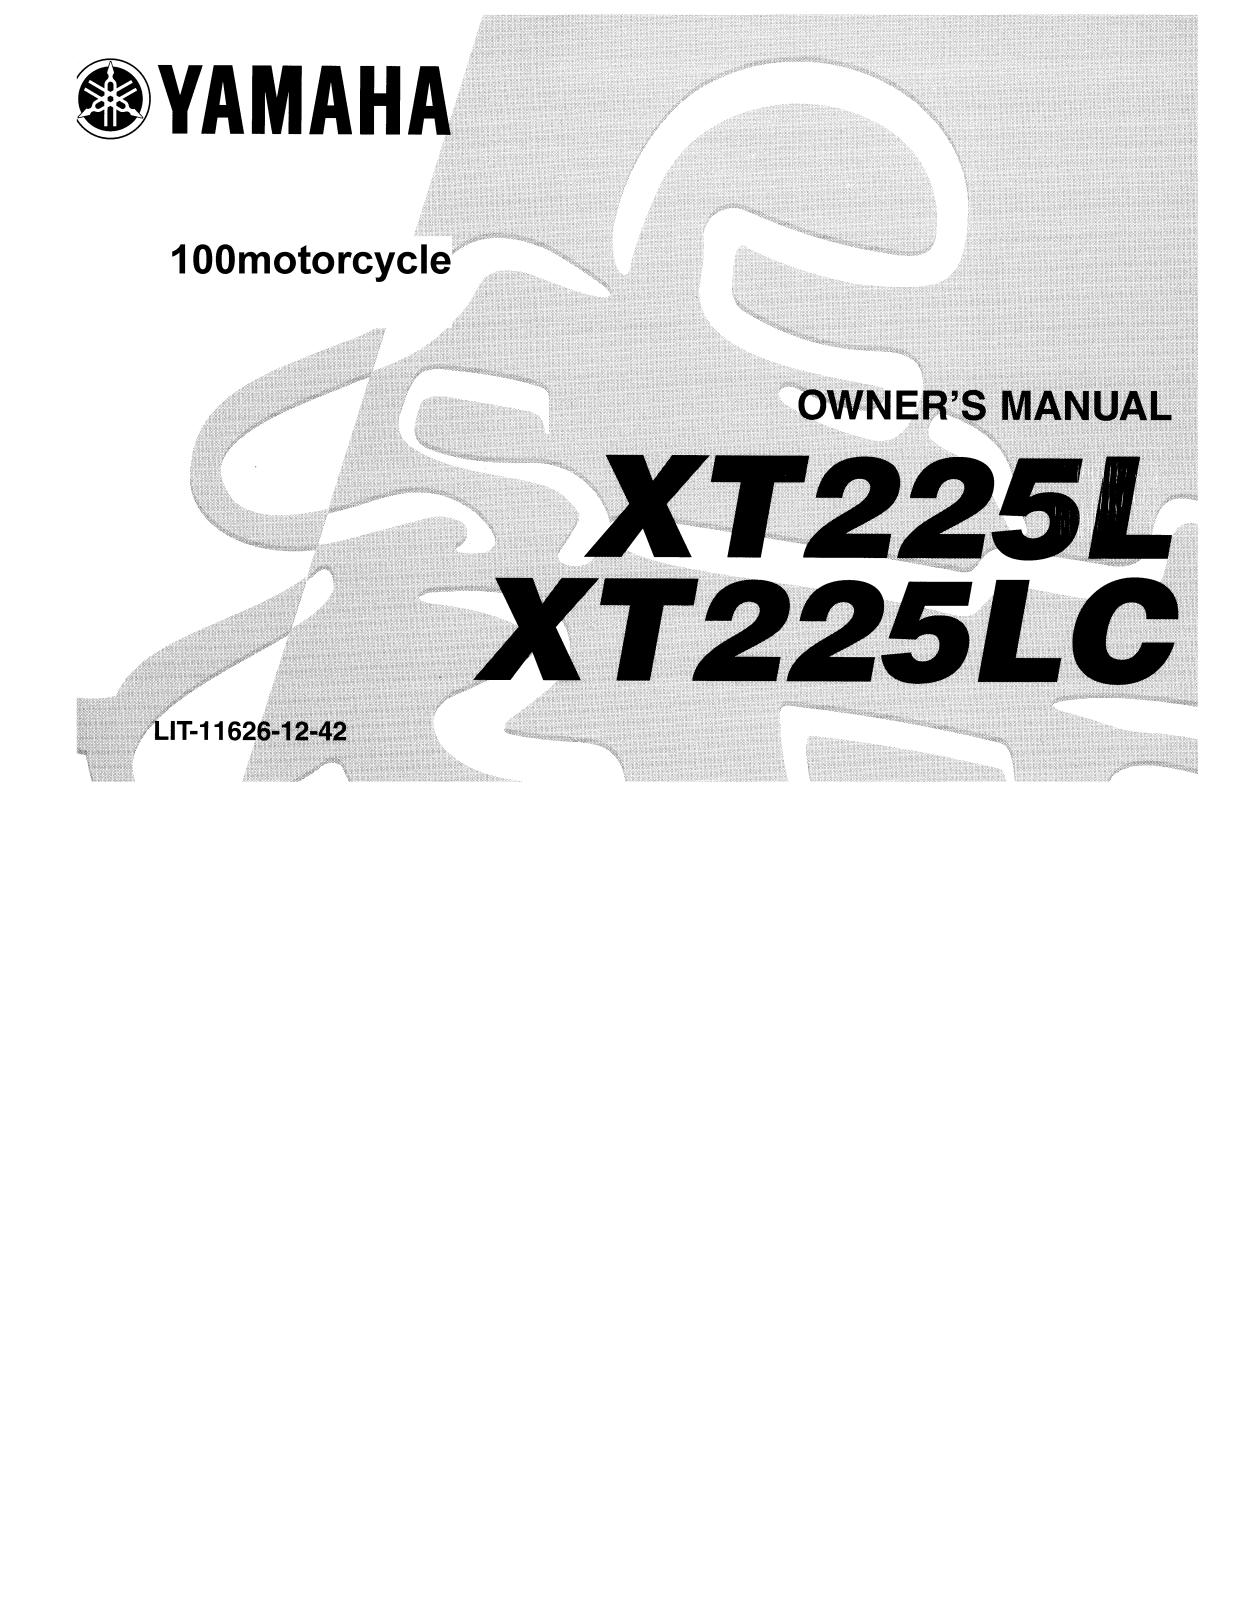 Yamaha XT225 User Manual